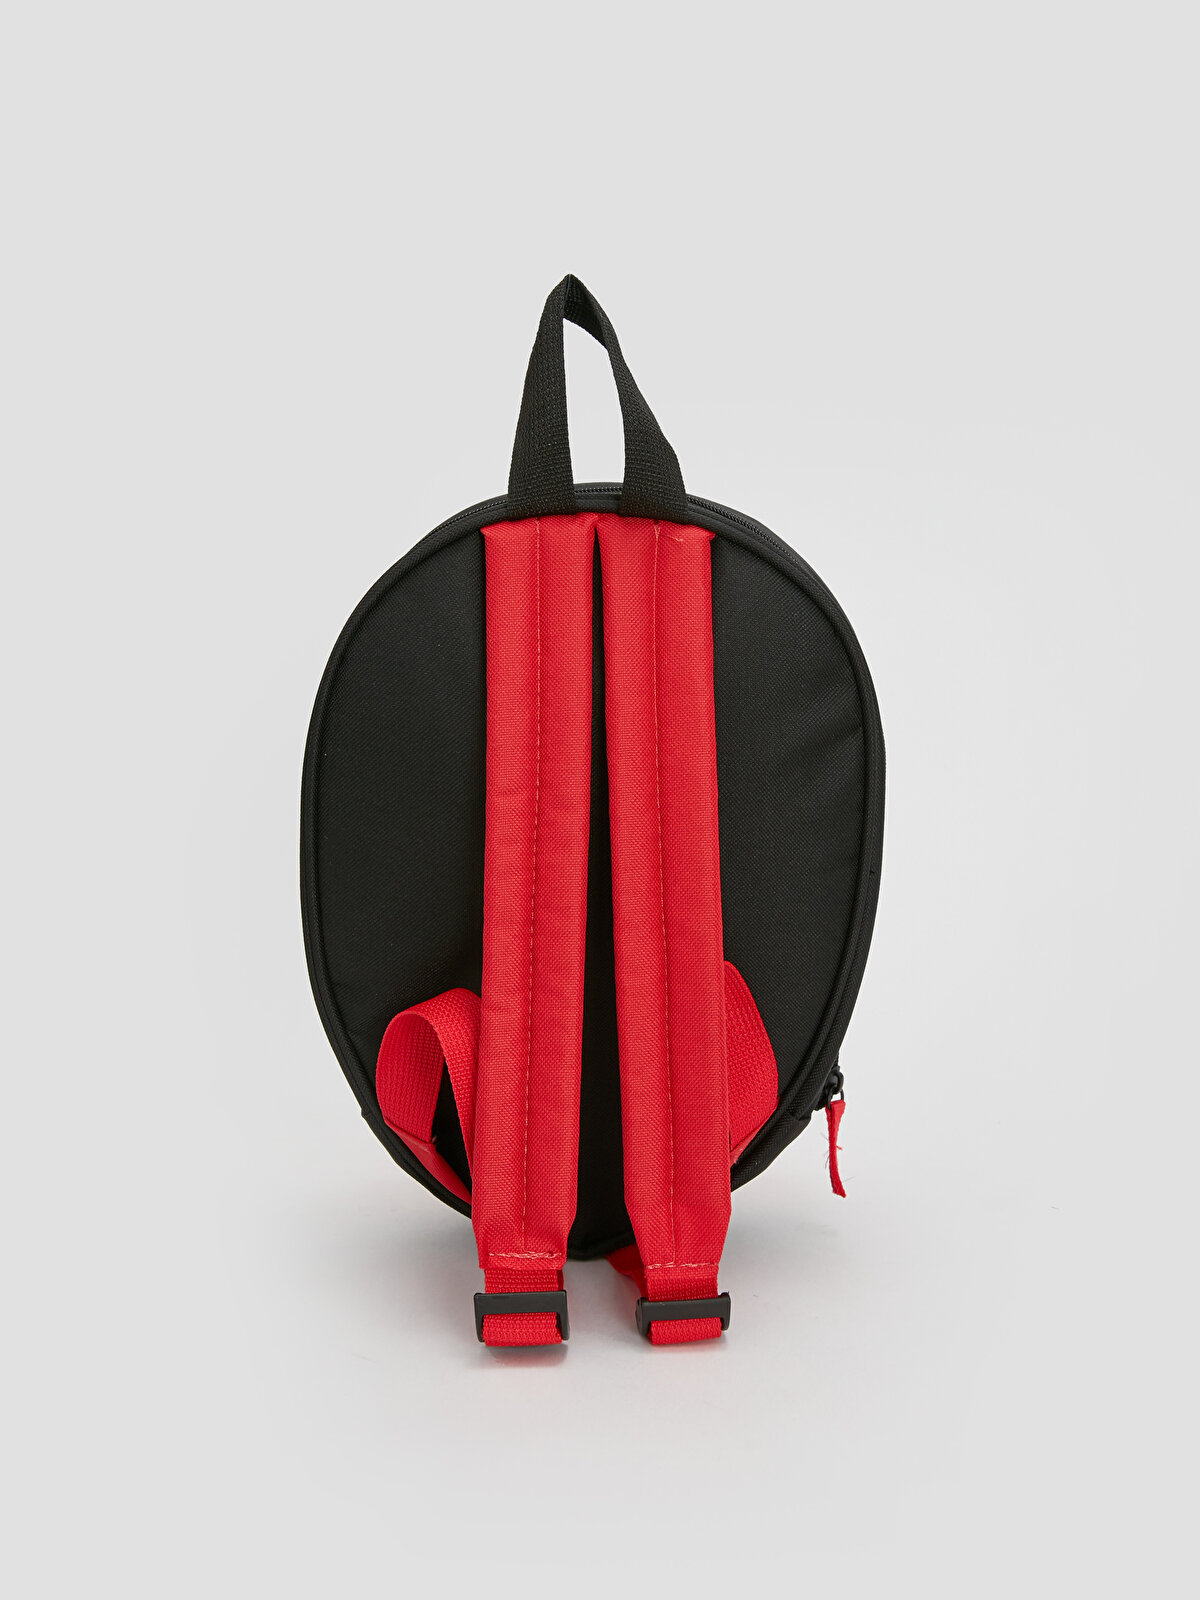 Spiderman Printed Boy's Backpack -W33414Z4-CSG - W33414Z4-CSG - LC Waikiki